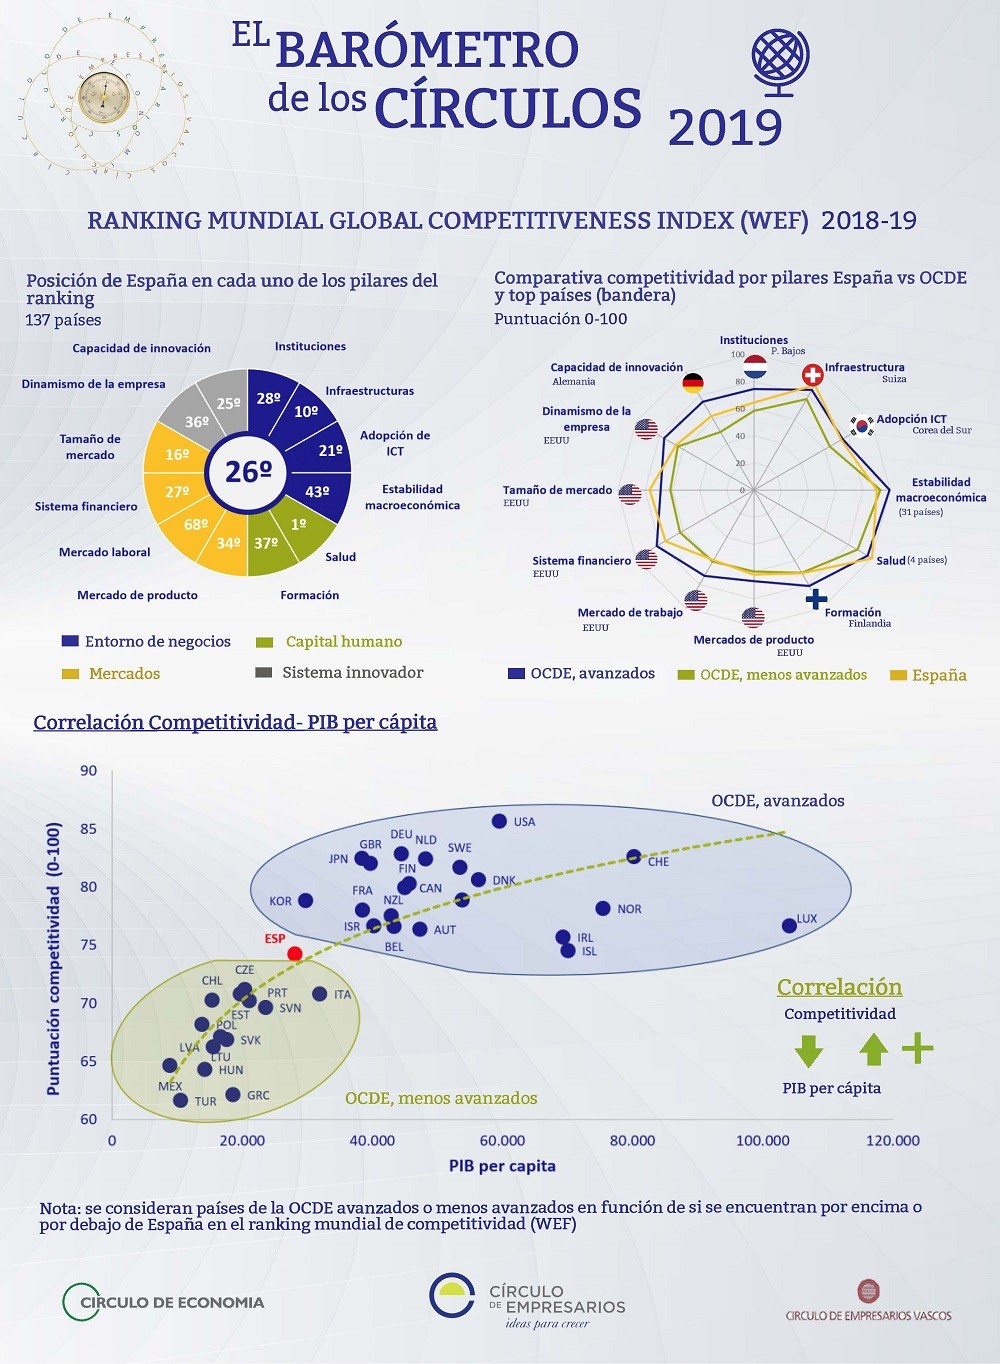 Ranking mundial Global Competitiveness Index 2018-19 Barómetro de los Círculos Círculo de Empresarios